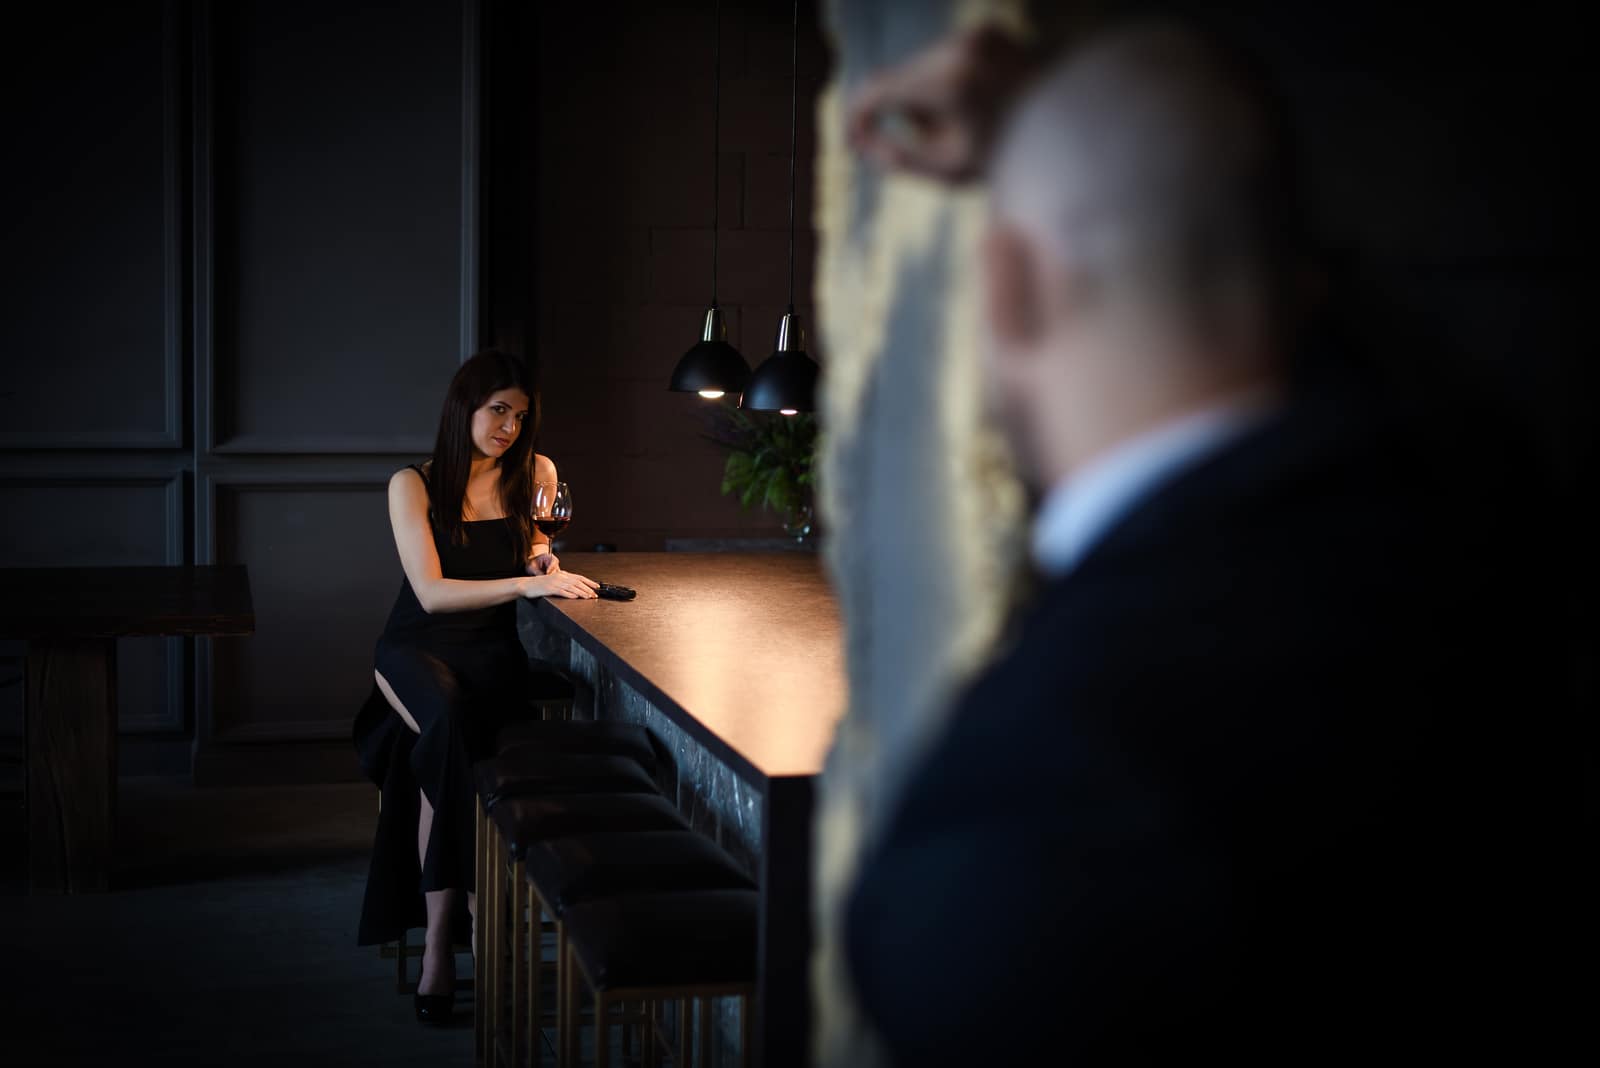 mujer mirando a un hombre en un bar